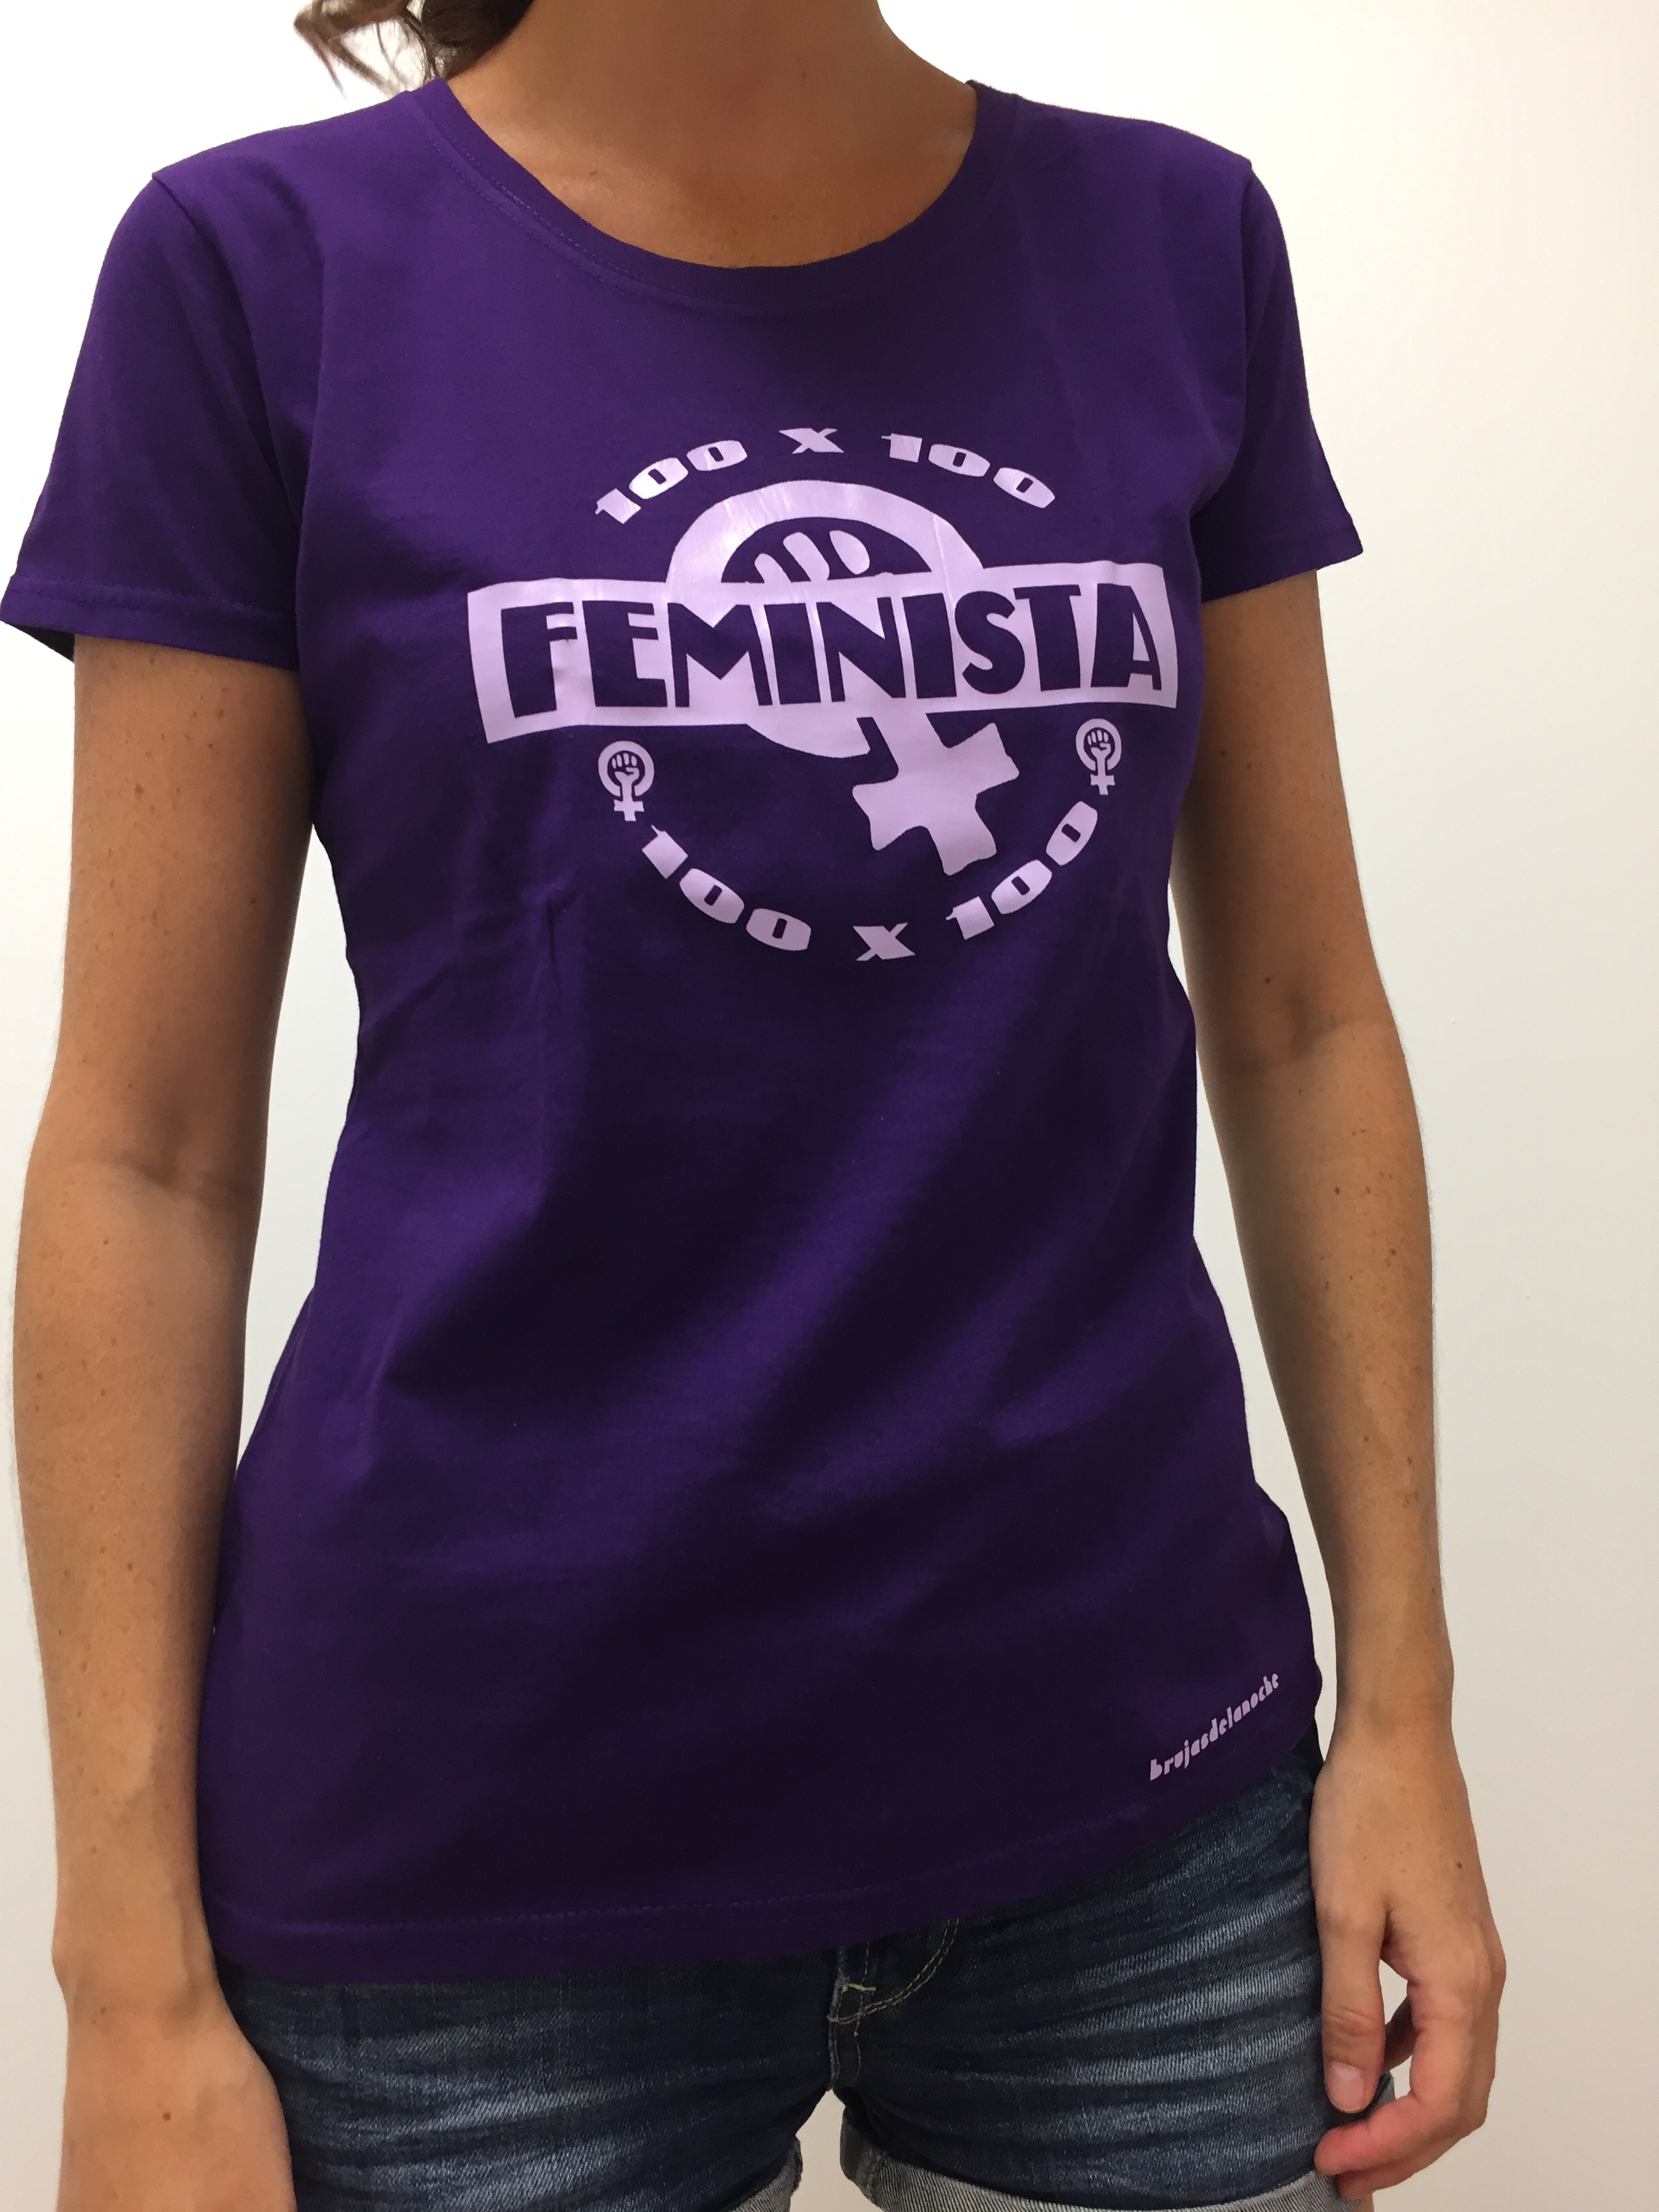 Camiseta feminista – Las Brujas de la Noche